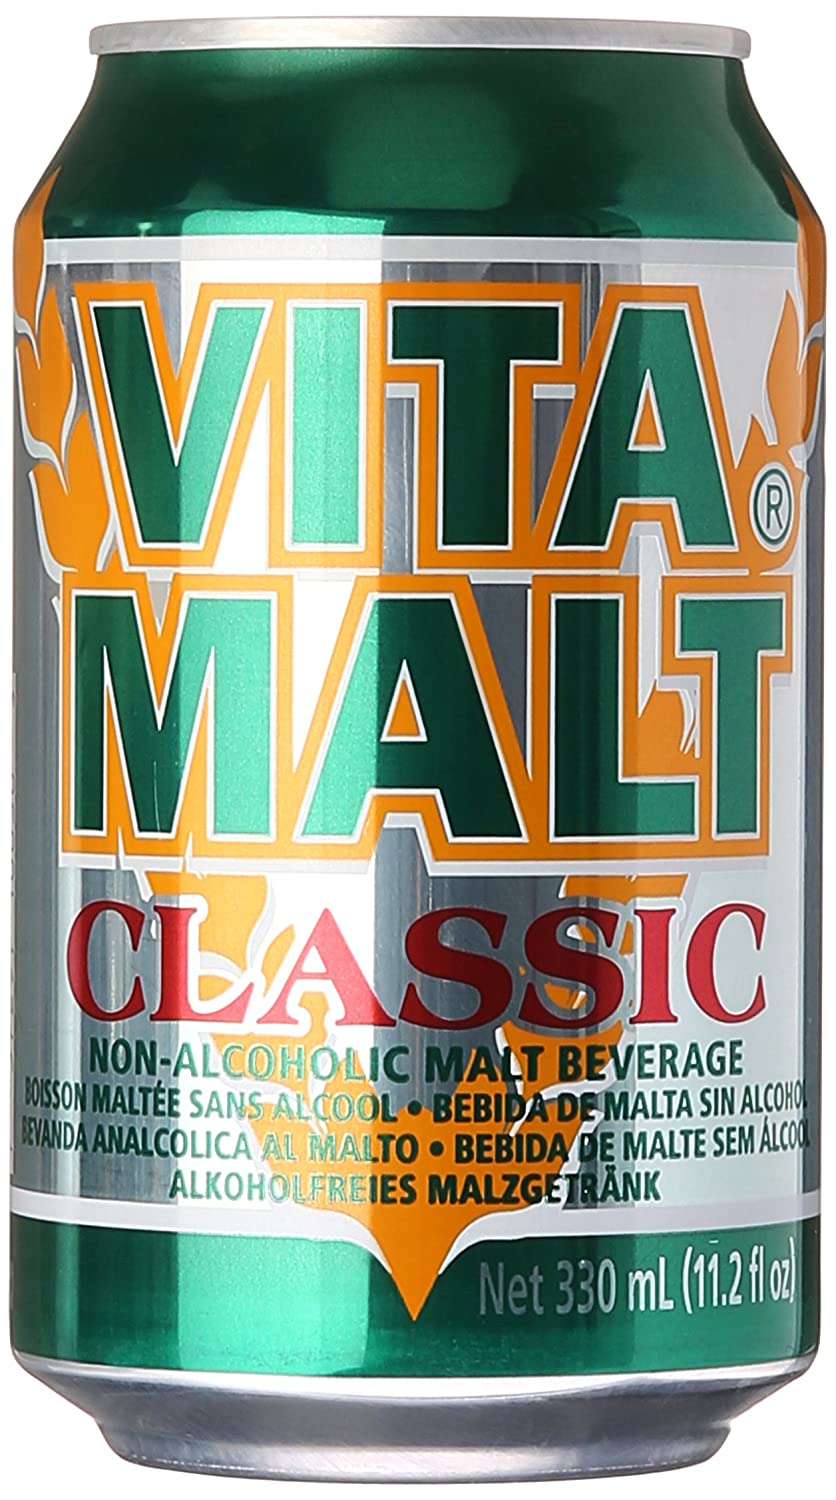 Vitamalt Classic 330ML Can, Case of 24